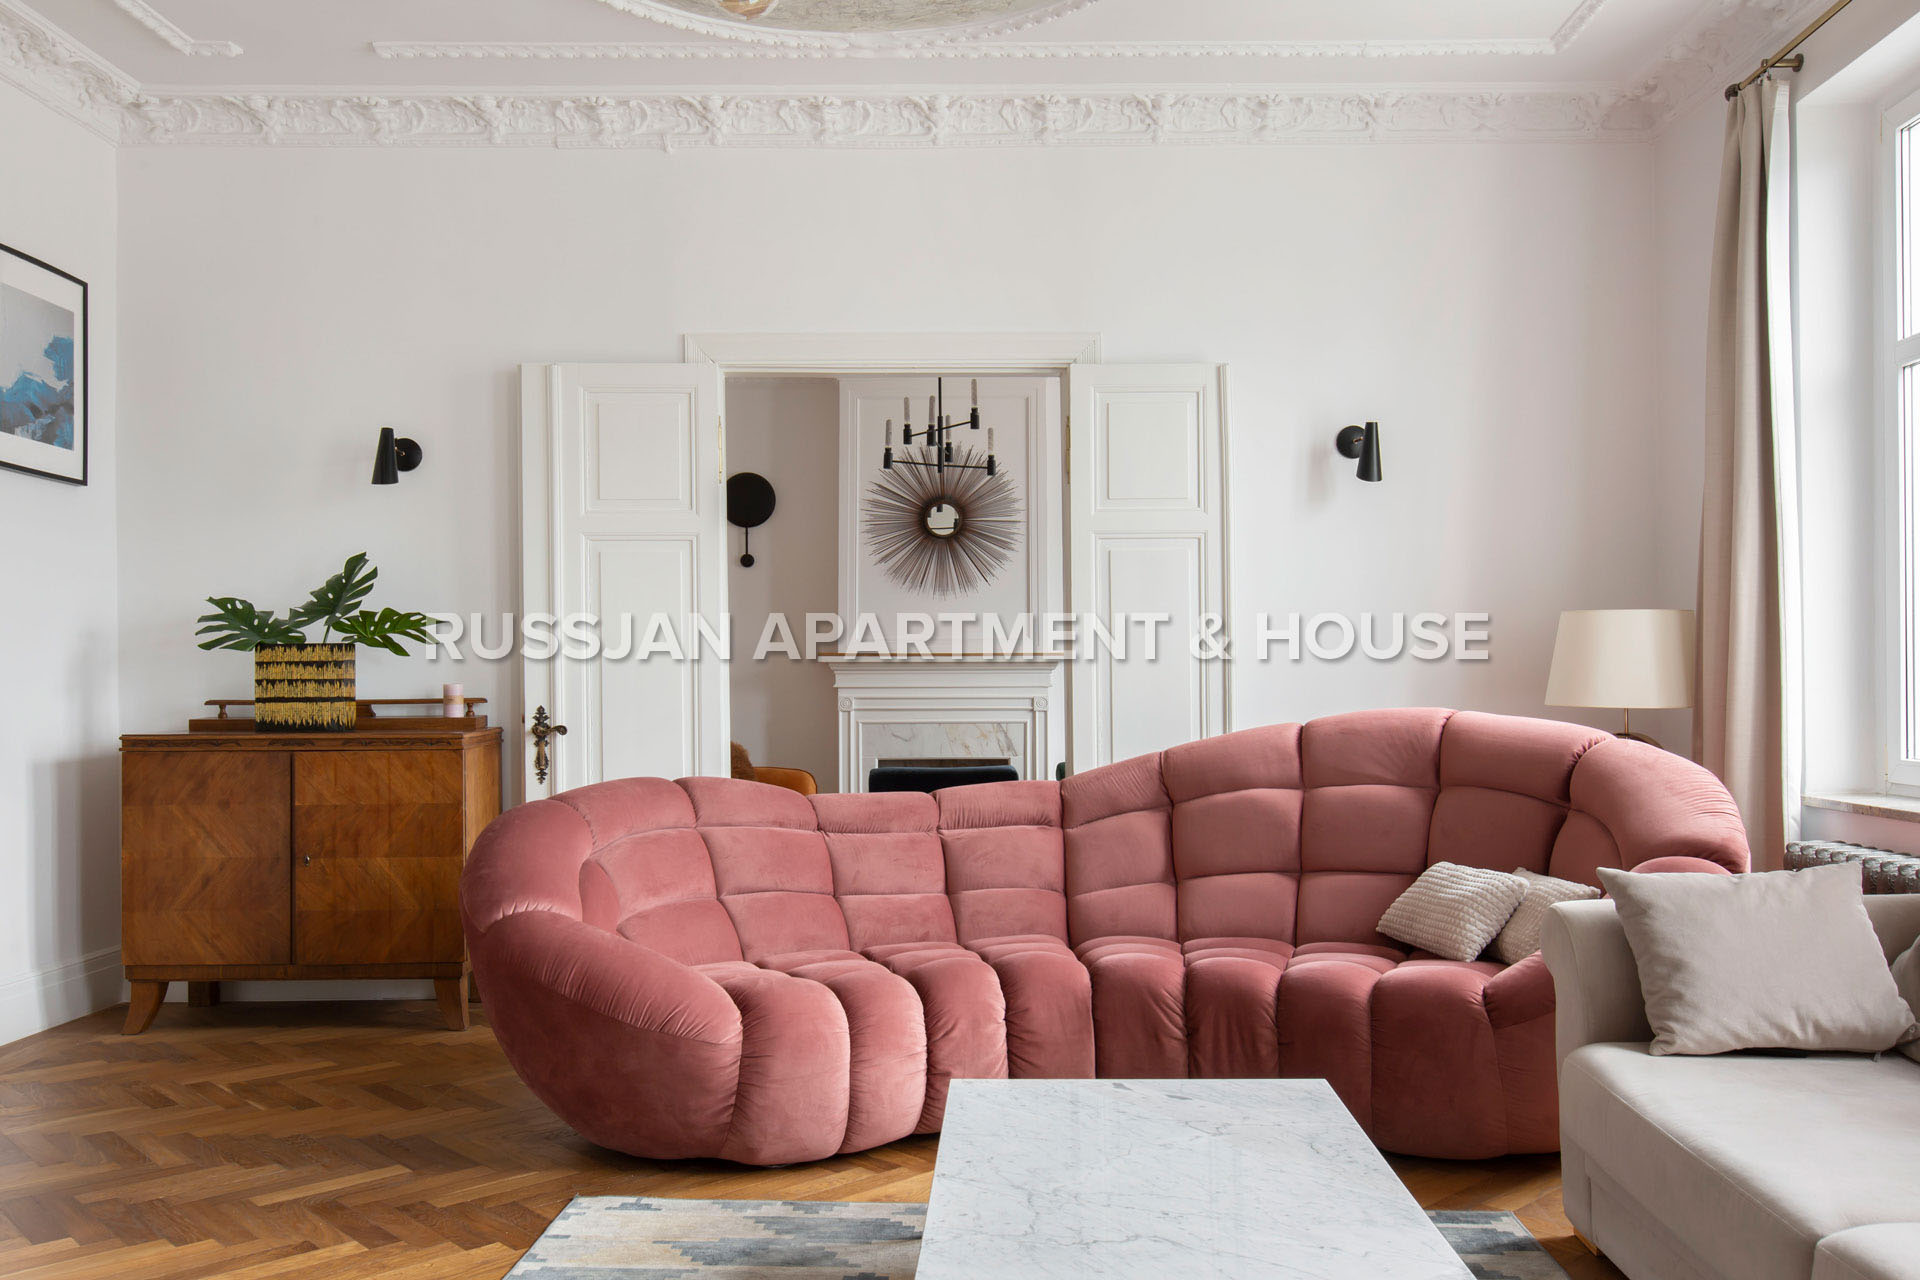 Gdańsk - apartament na wynajem Ulica Łąkowa | RUSSJAN Apartment & House